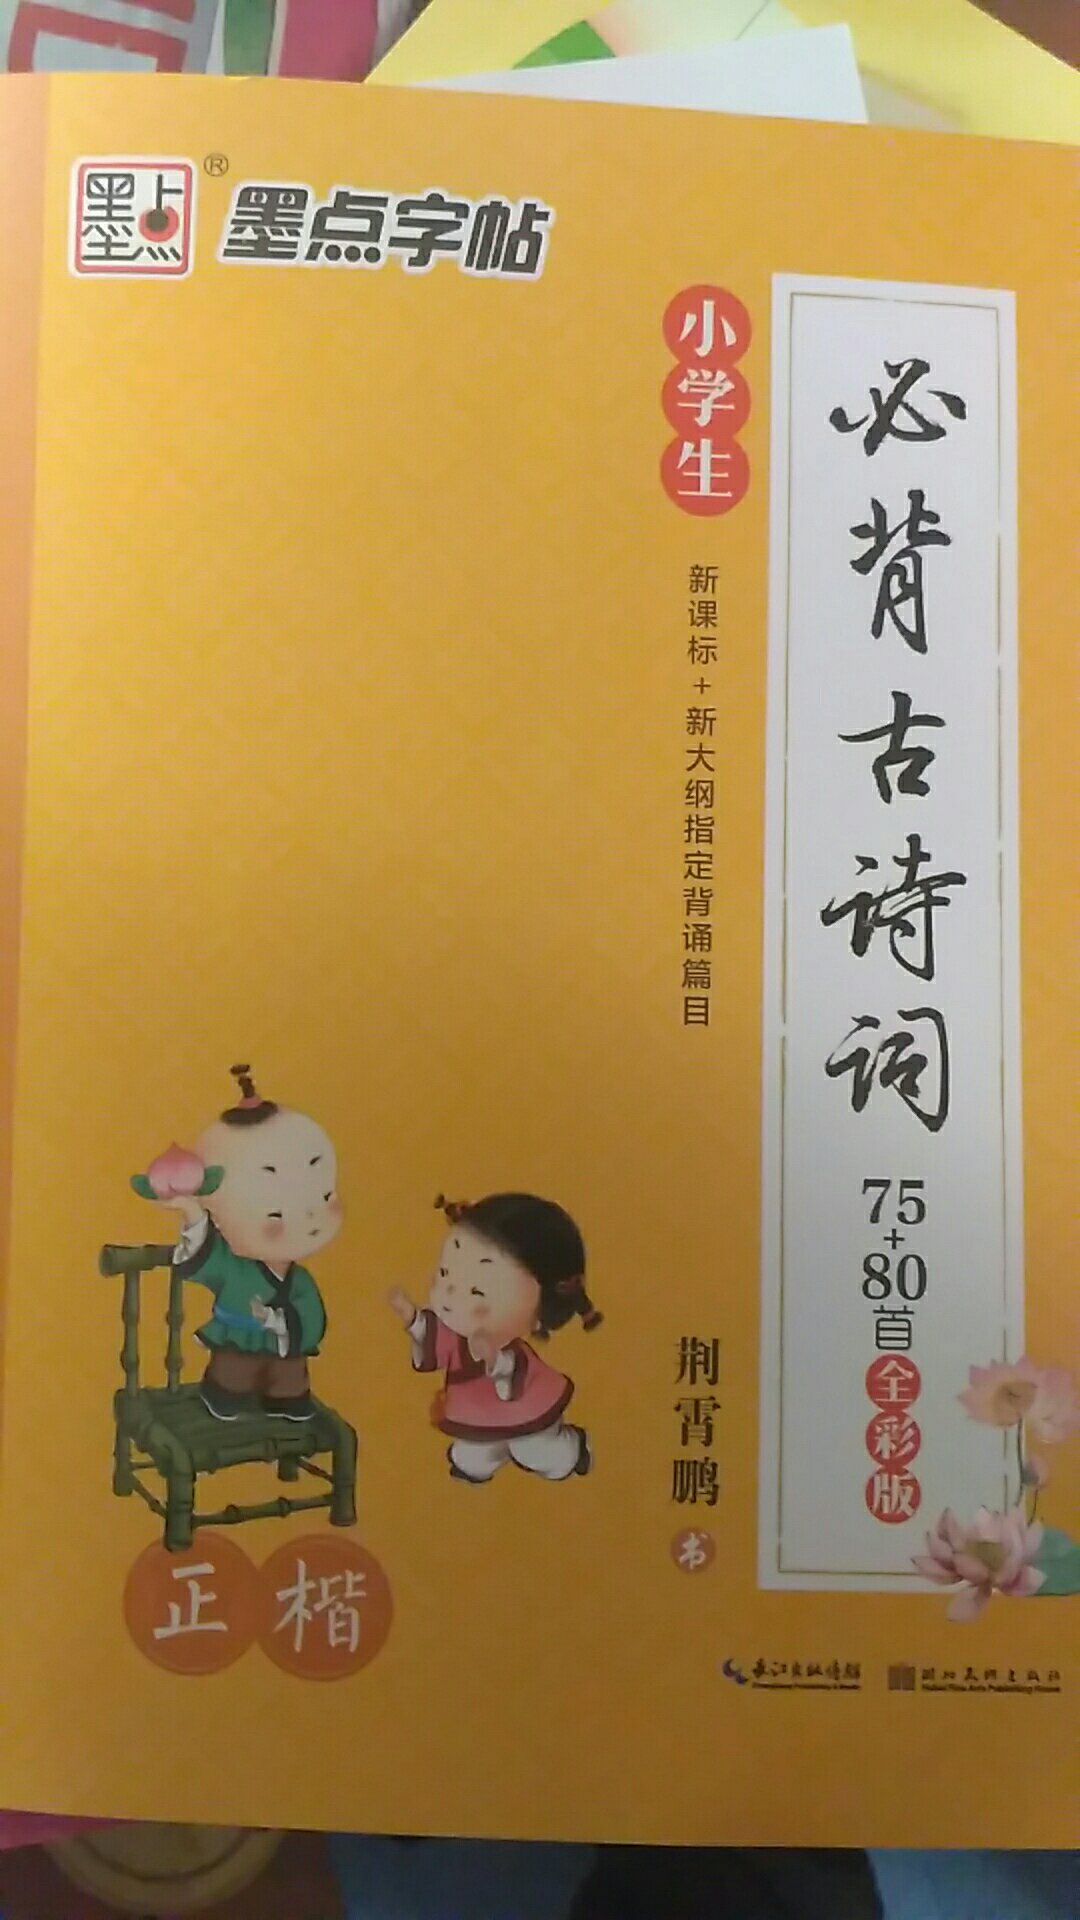 学习中华传统文化，孩子的寒假作业，老师要求买这个噢。